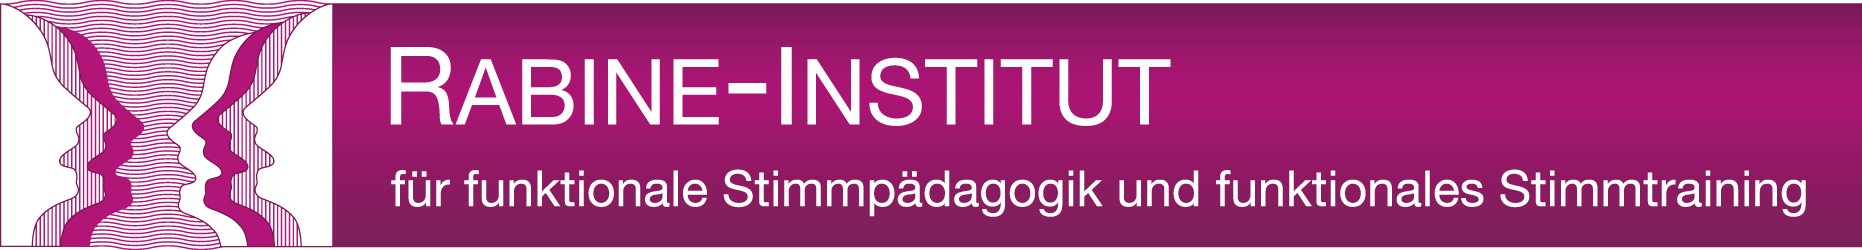 Rabine Institut Logo